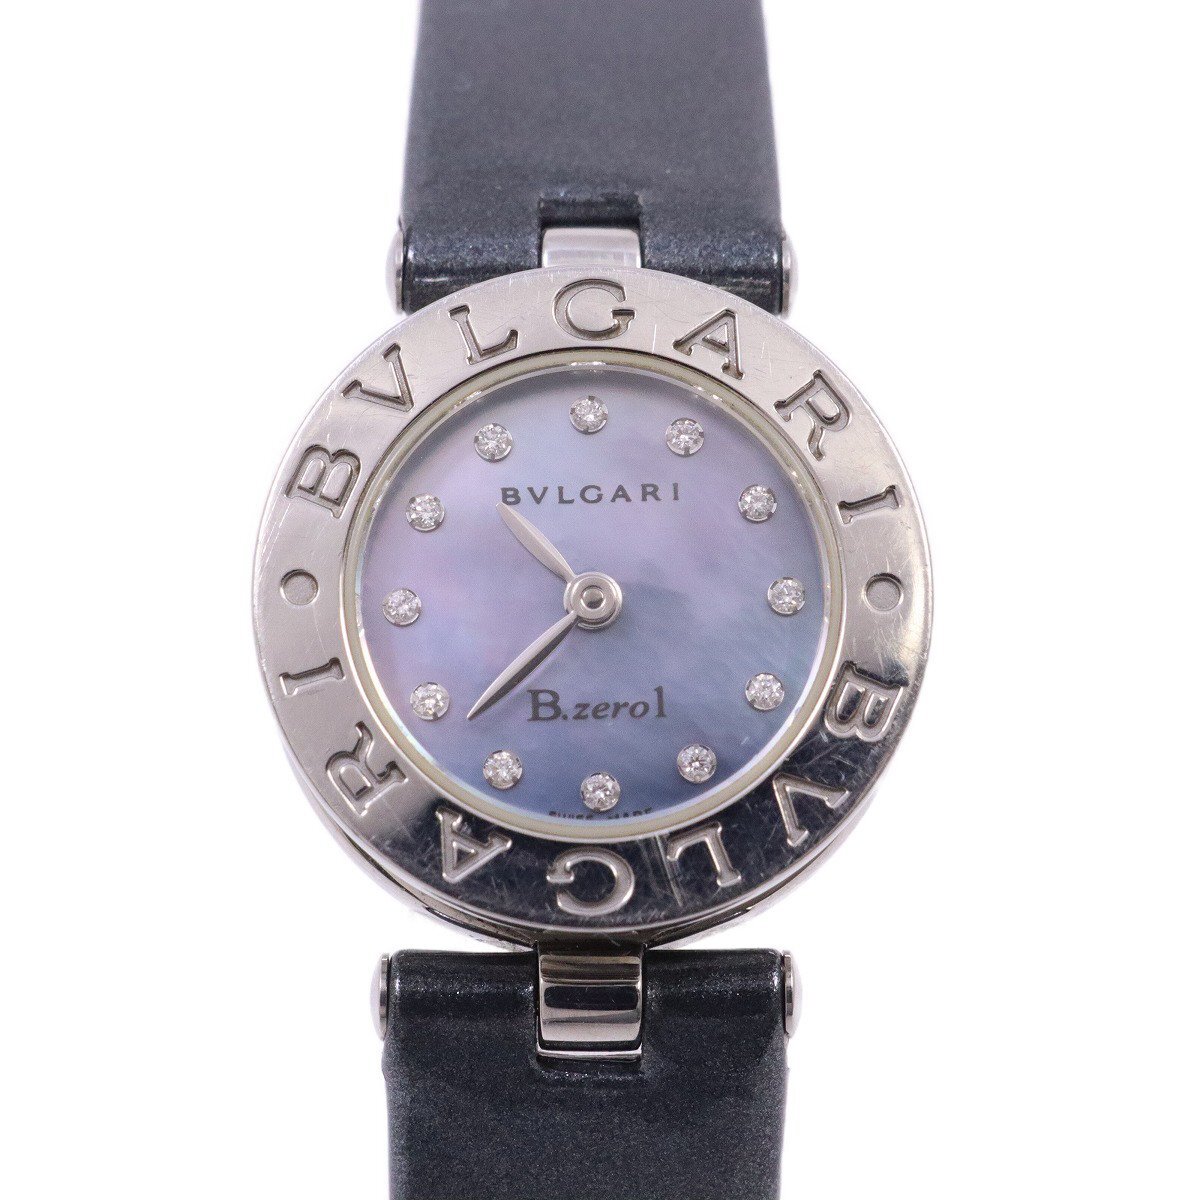  BVLGARY B-zero1 кварц женские наручные часы 12P с бриллиантом голубой ракушка циферблат оригинальный оттенок голубого эмаль ремень BZ22S[... ломбард ]